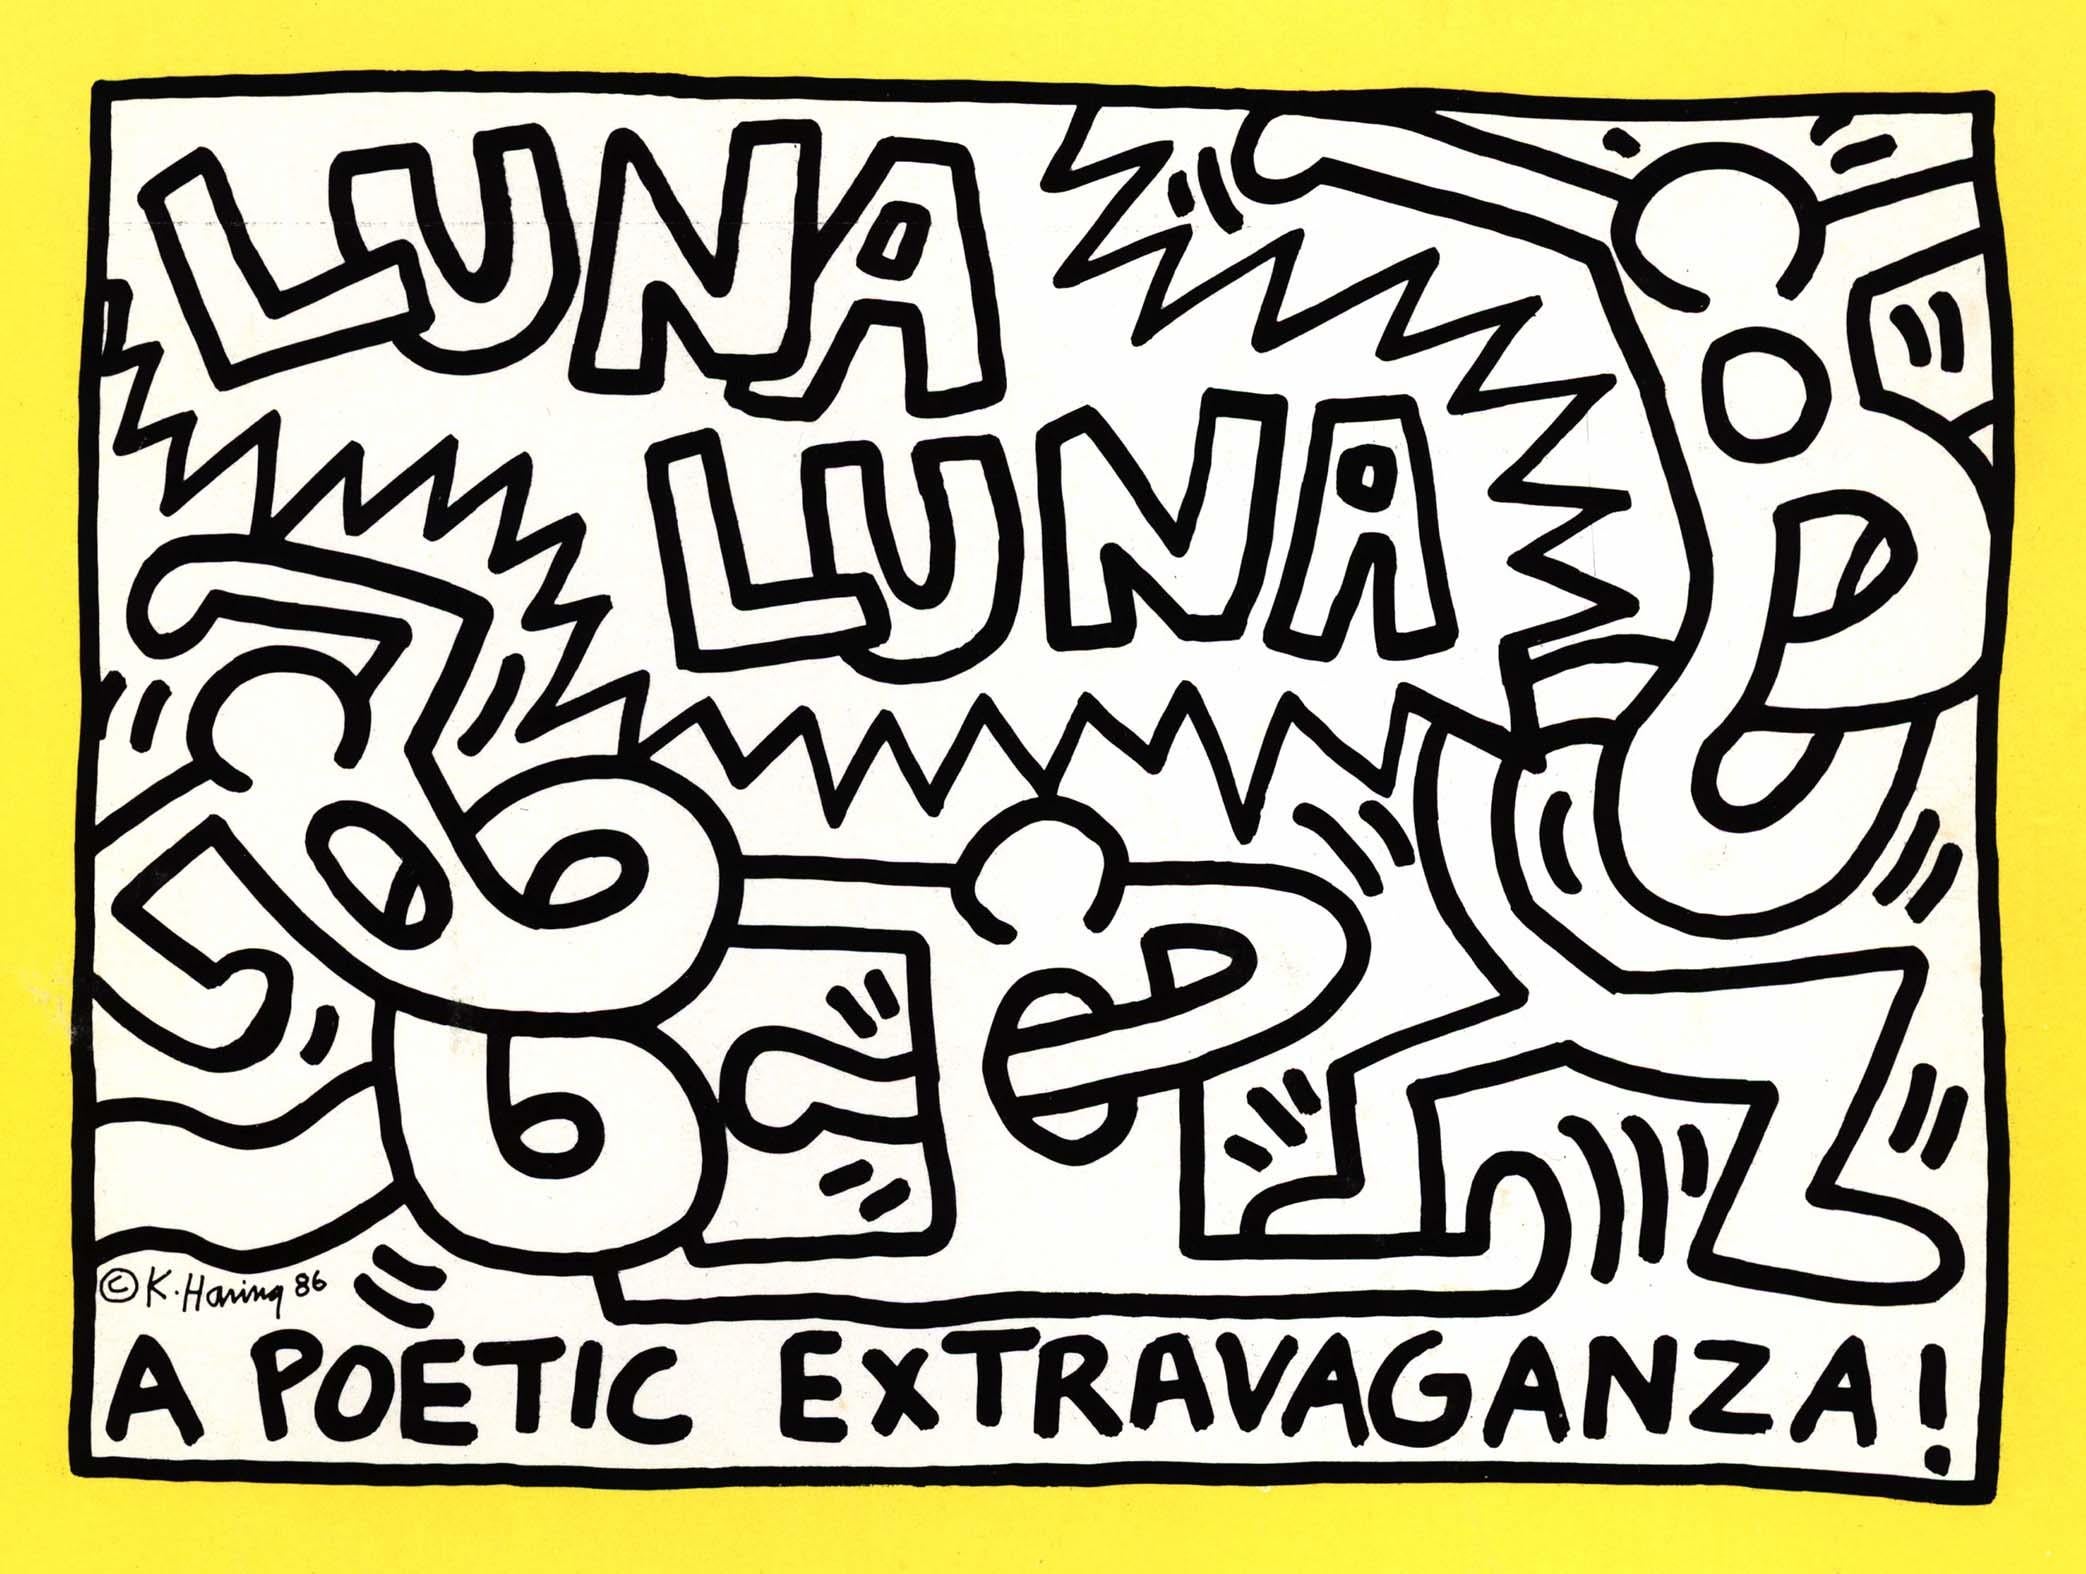 Keith Haring Luna Luna Karussell. Eine poetische Extravaganz", 1986 (Keith Haring Luna Luna):
Luna Luna" wurde 1987 von Andre Heller für "Eine Messe mit moderner Kunst" in Hamburg organisiert und kürzlich, nach fast 40 Jahren Lagerung, von Drake in